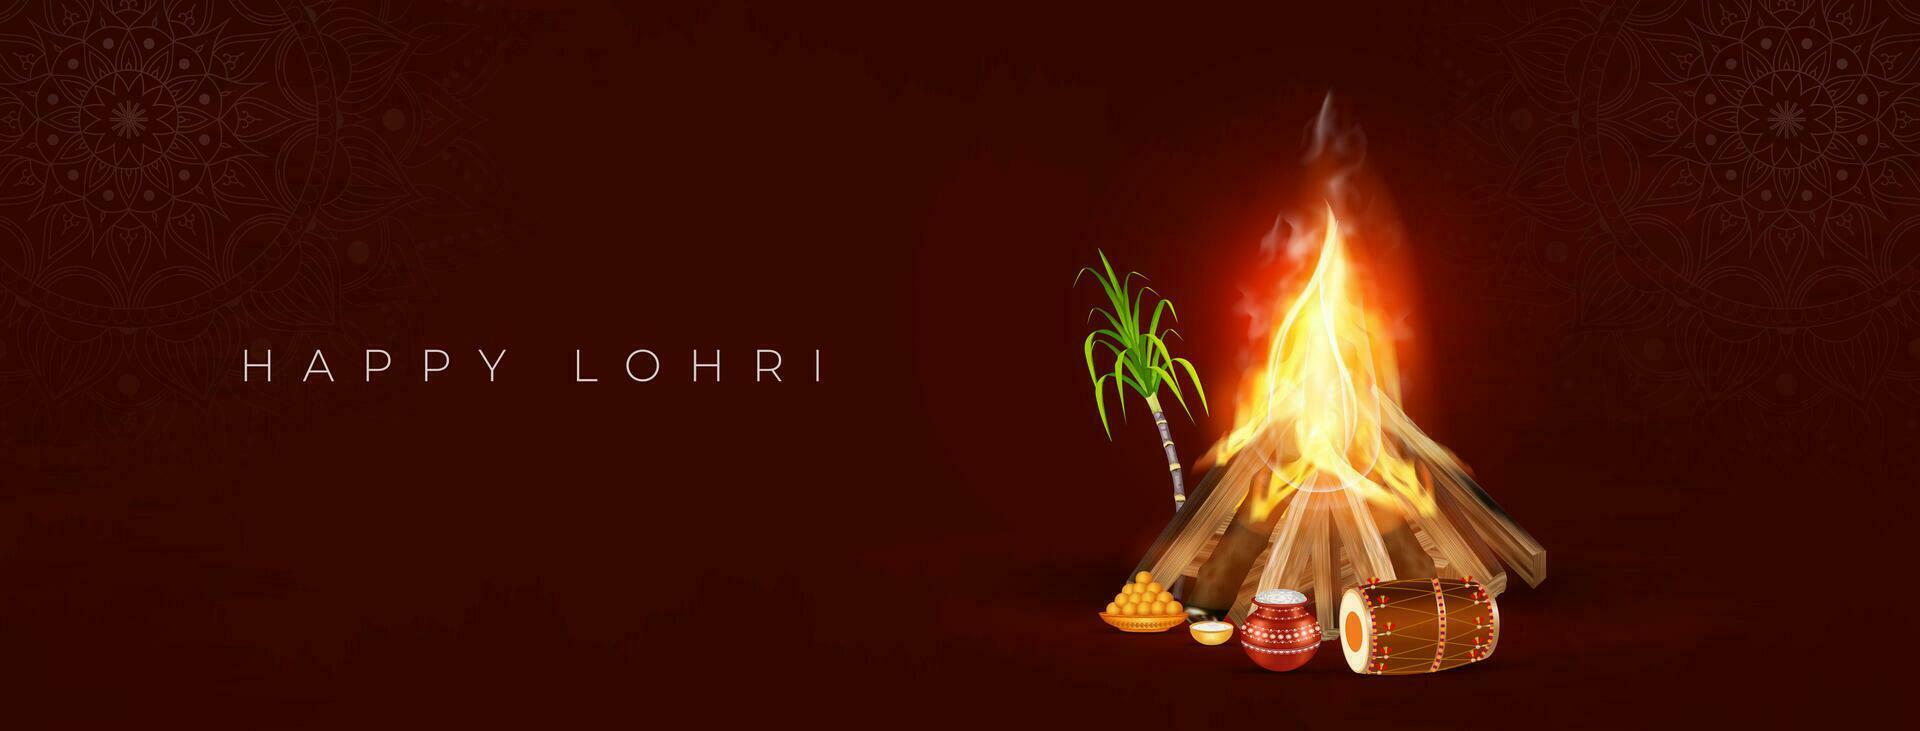 Happy Lohri Celebration Social Media Post vector